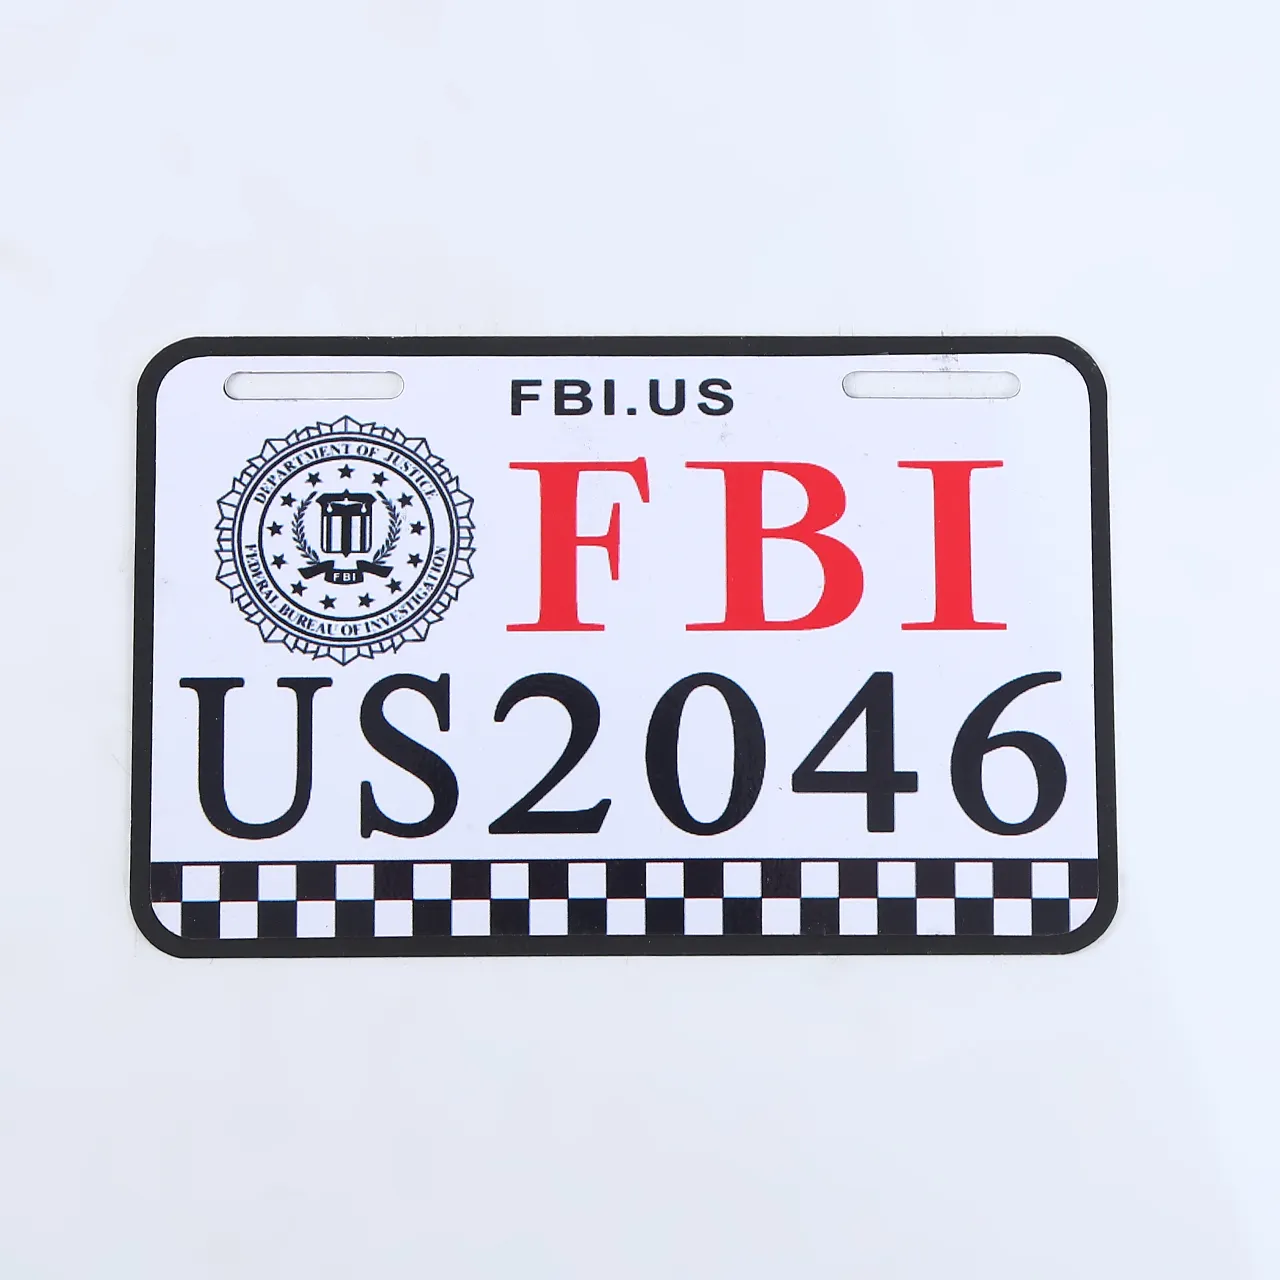 Placa de número da índia de design personalizado, gravada da placa de número reflexiva do carro